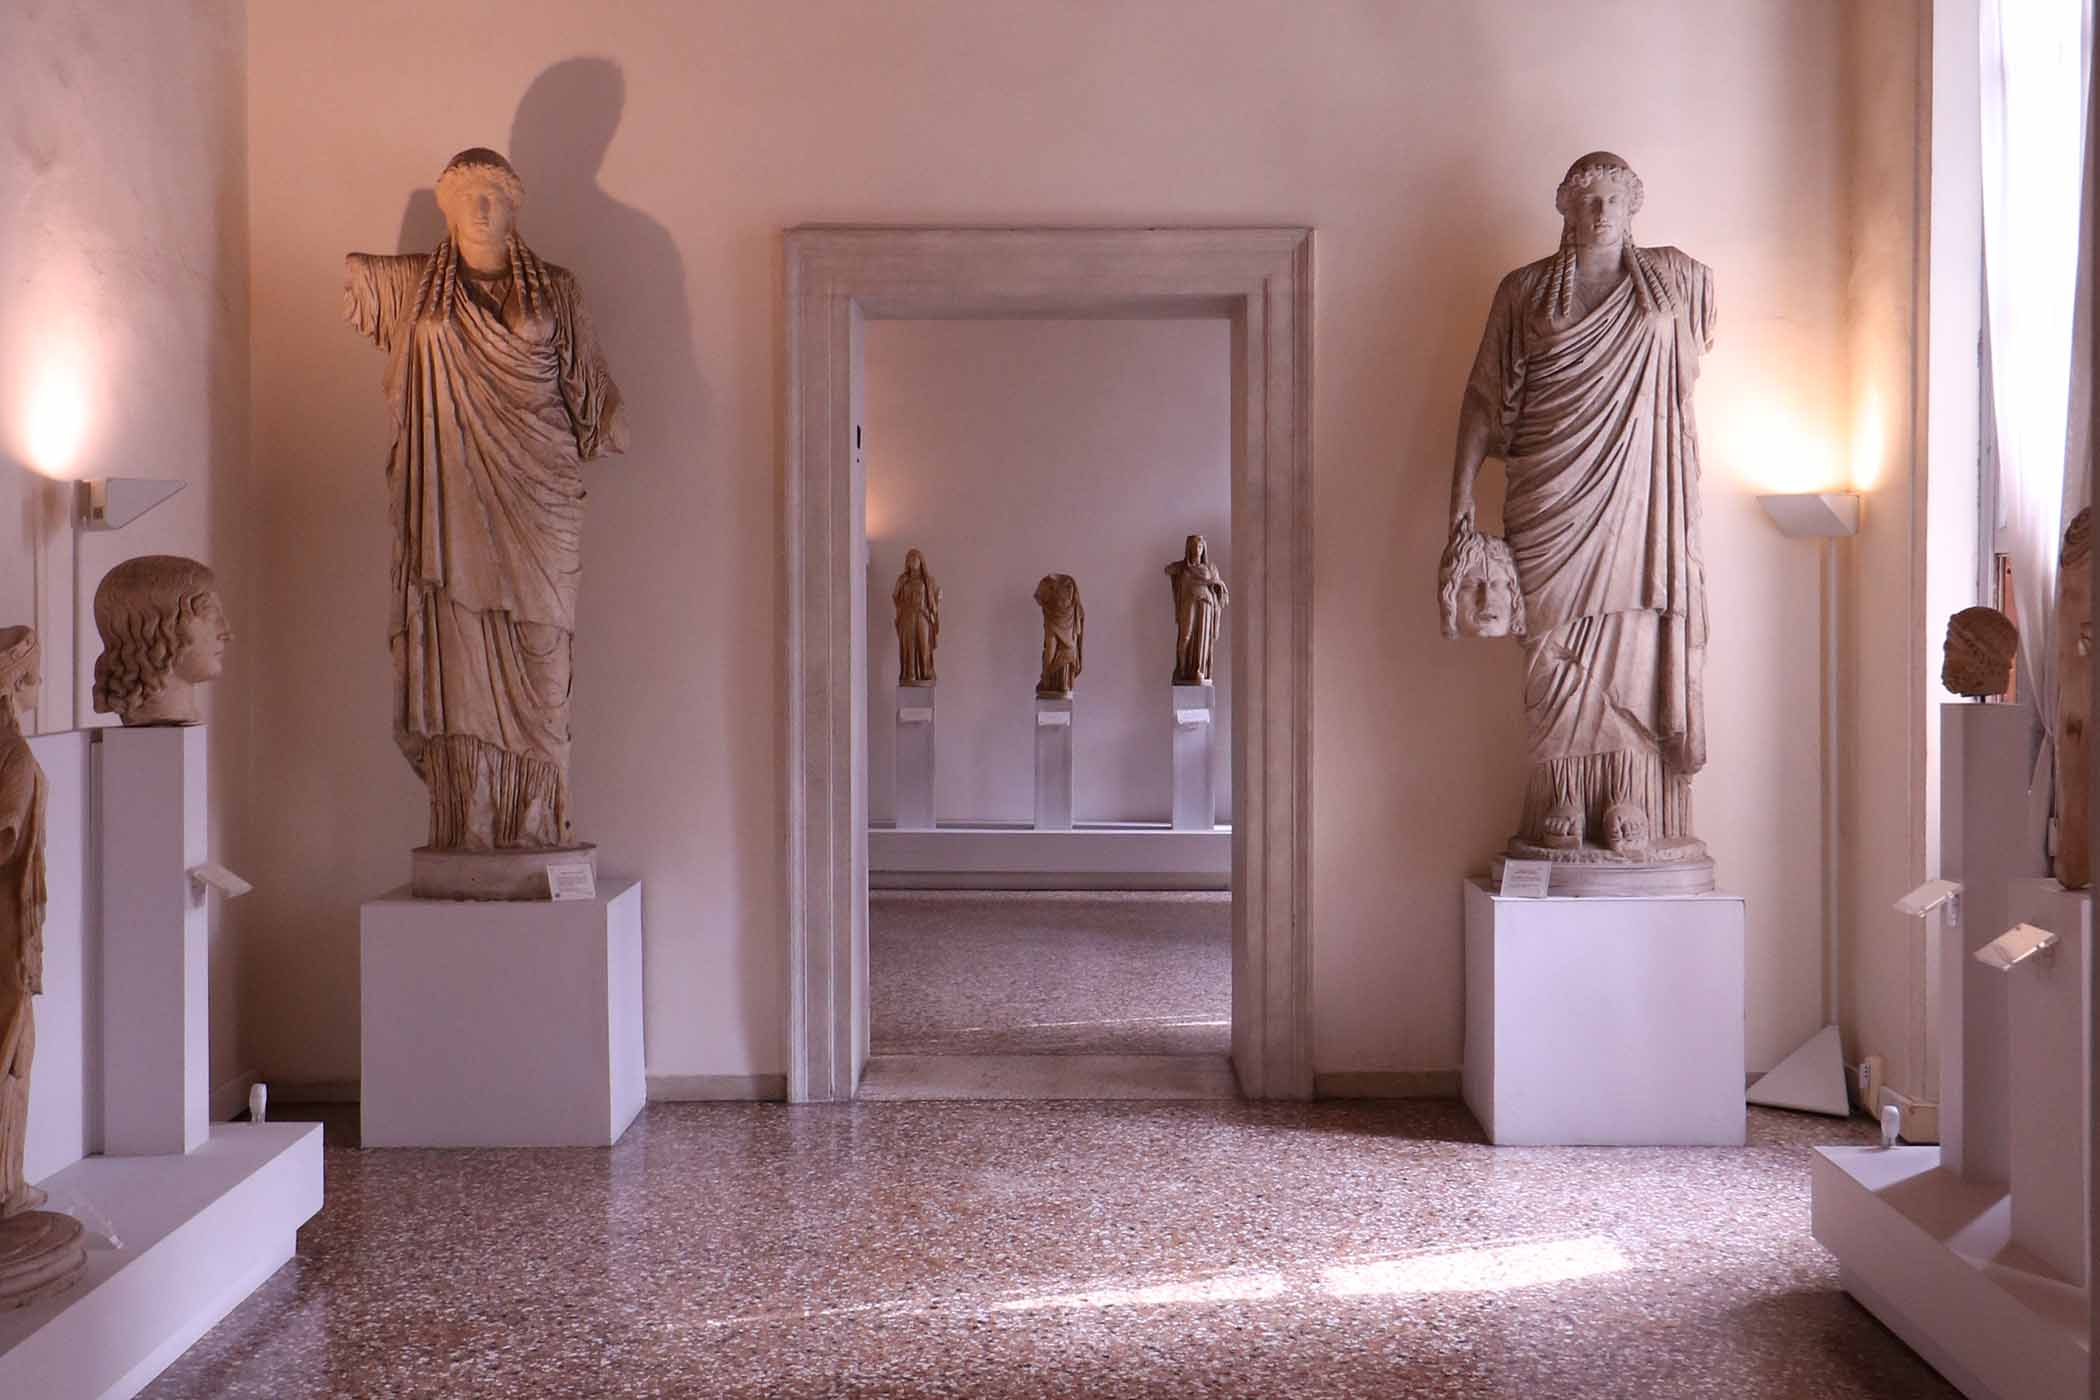 Museo Archeologico di Venezia. Credit: FILLI76